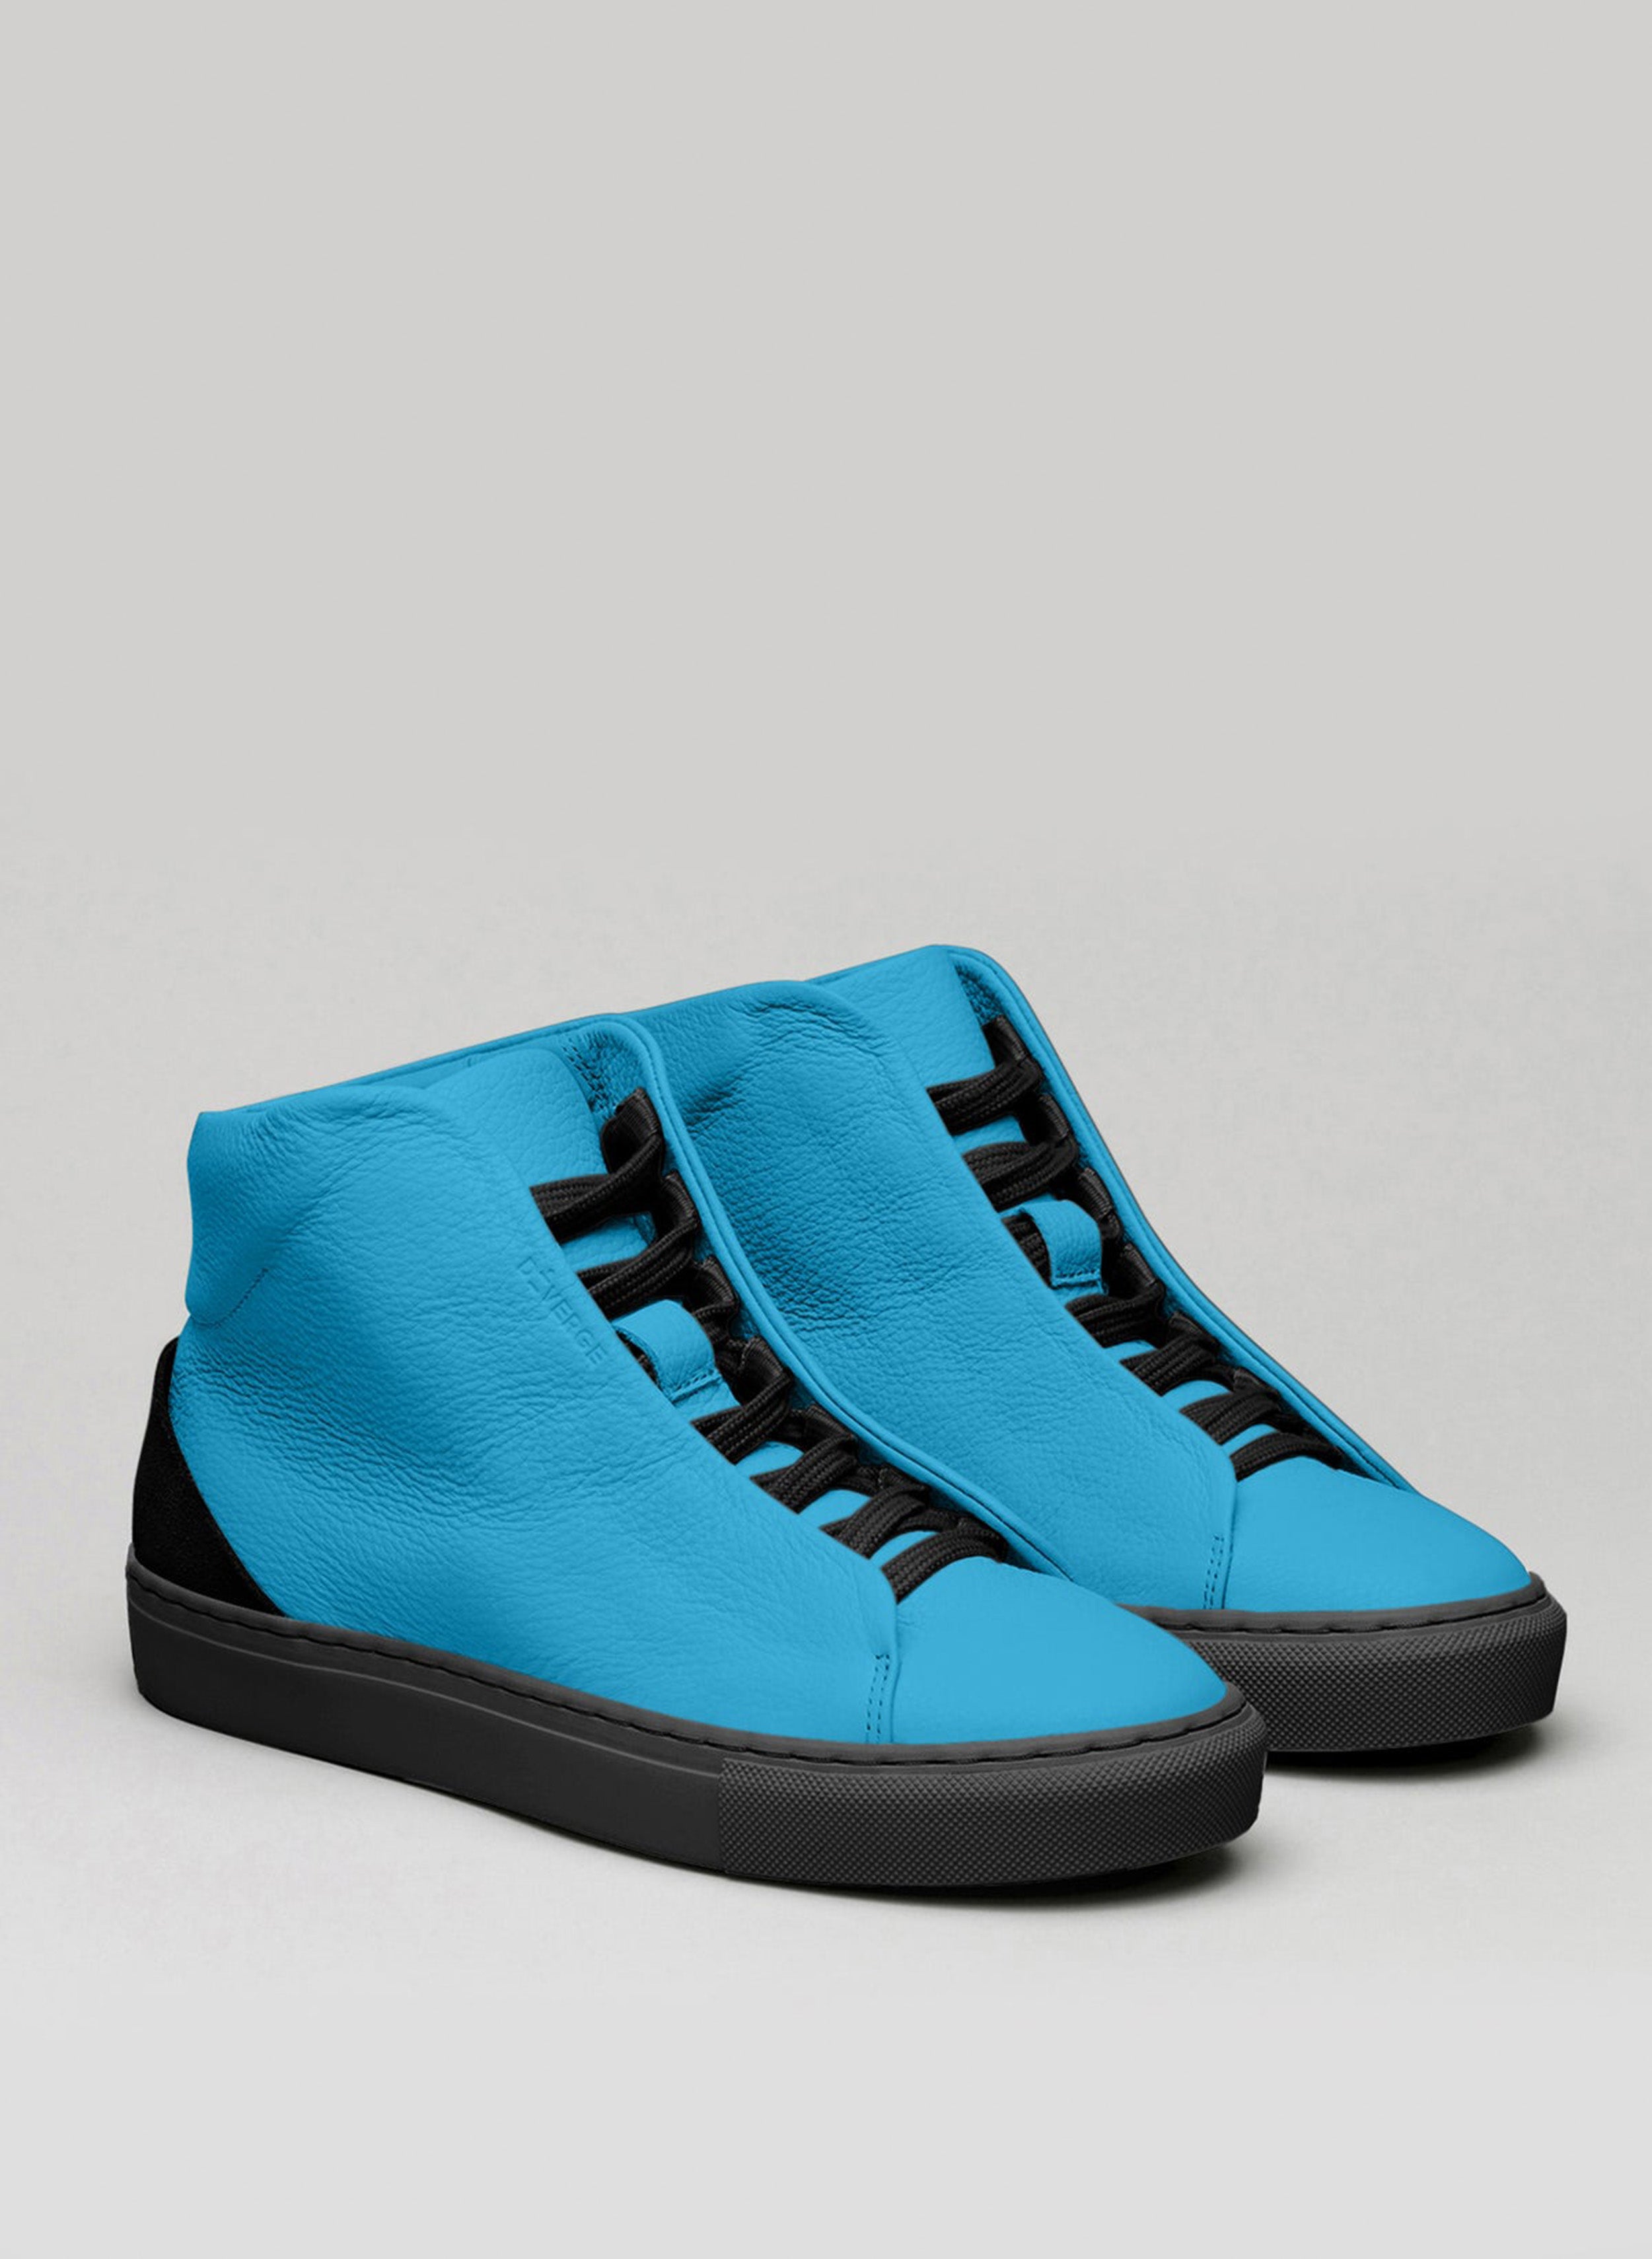 Une paire de chaussures montantes bleues sneakers avec des lacets noirs, mettant en valeur les chaussures personnalisées par Diverge.